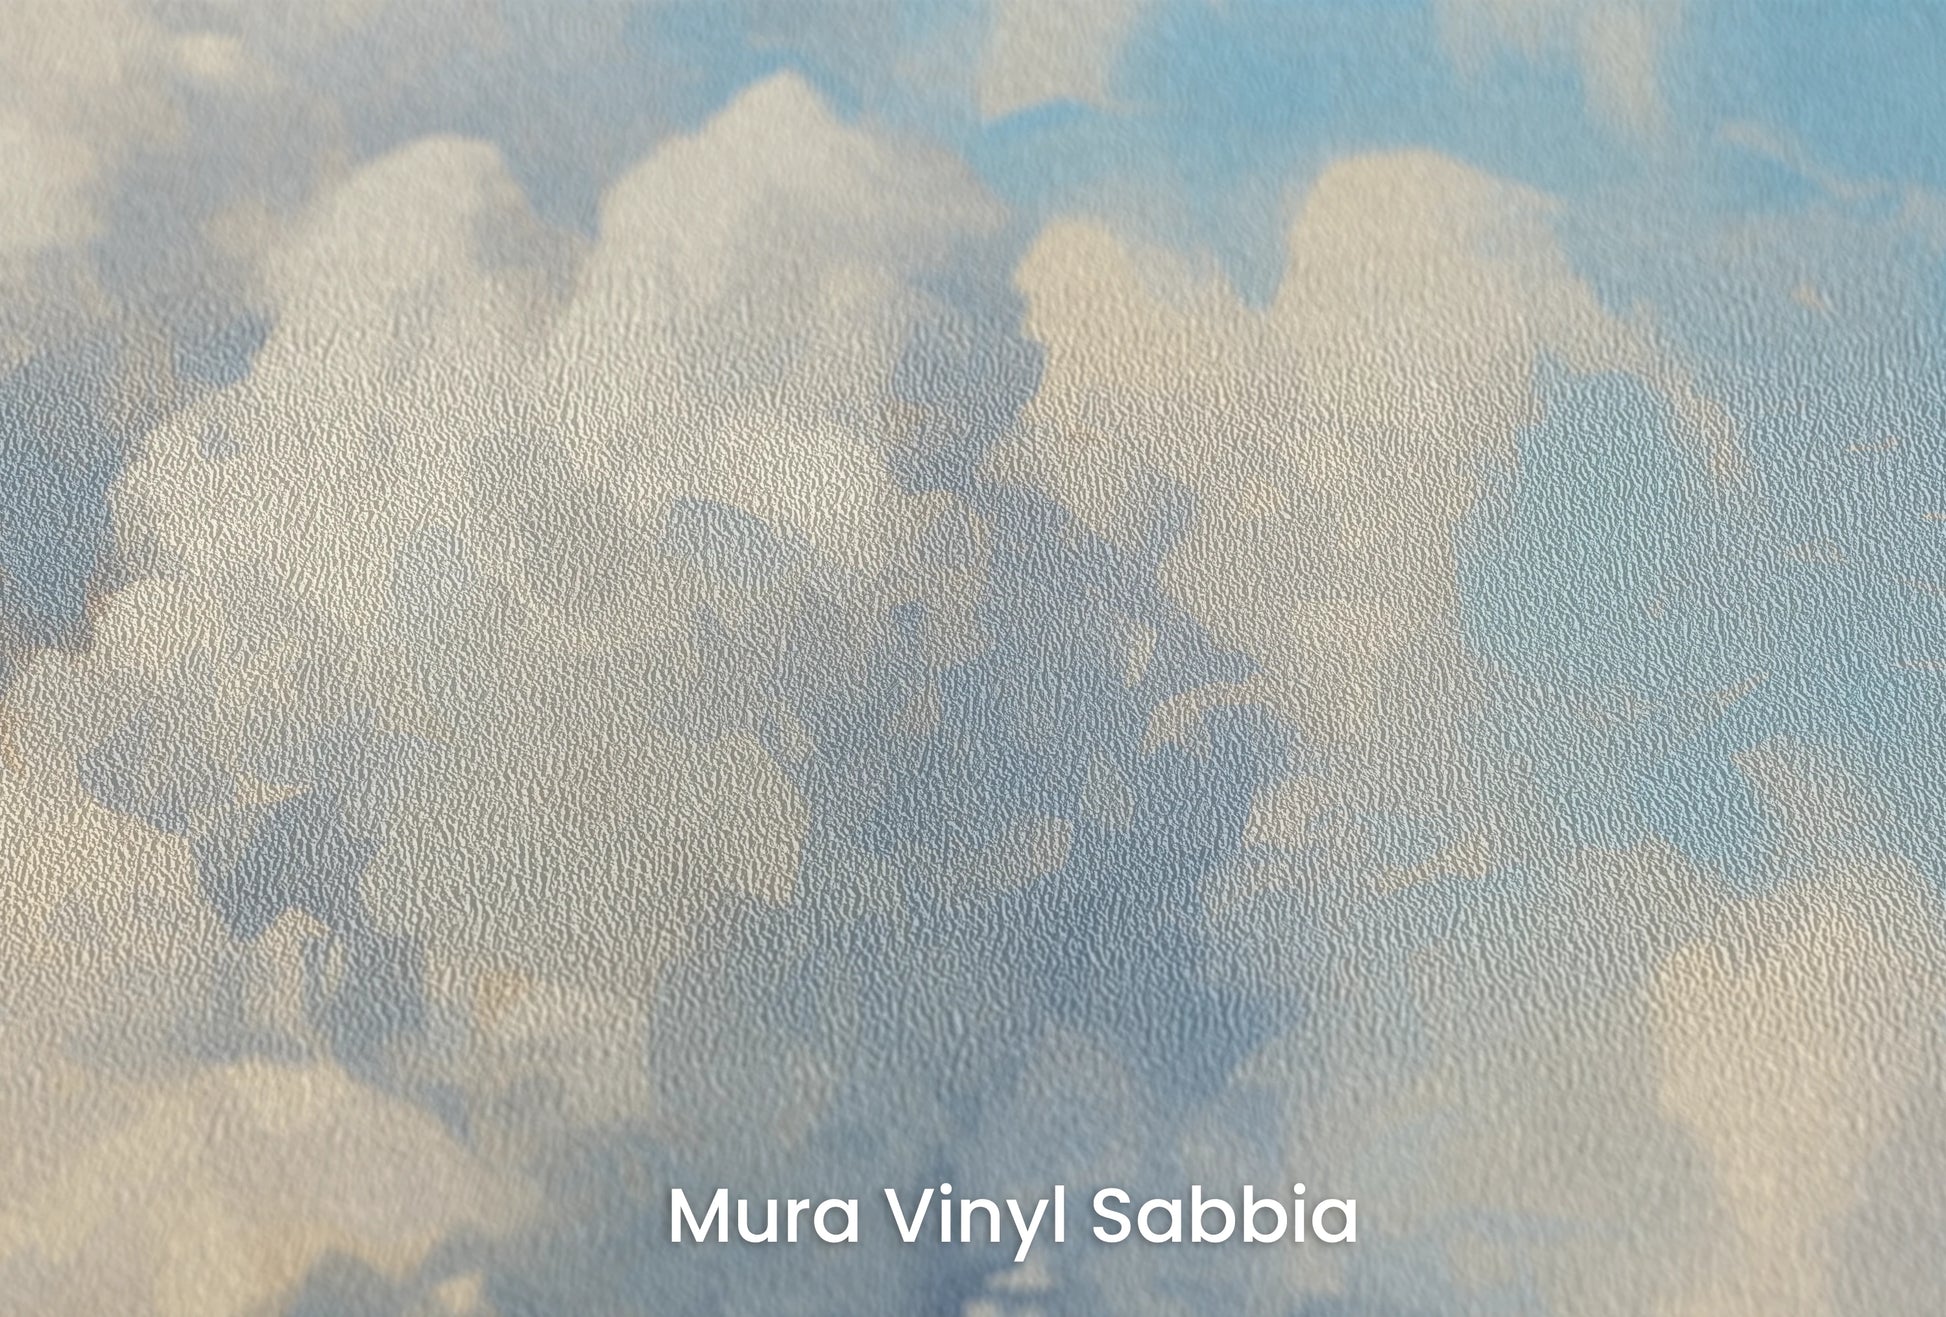 Zbliżenie na artystyczną fototapetę o nazwie Ethereal Fields na podłożu Mura Vinyl Sabbia struktura grubego ziarna piasku.